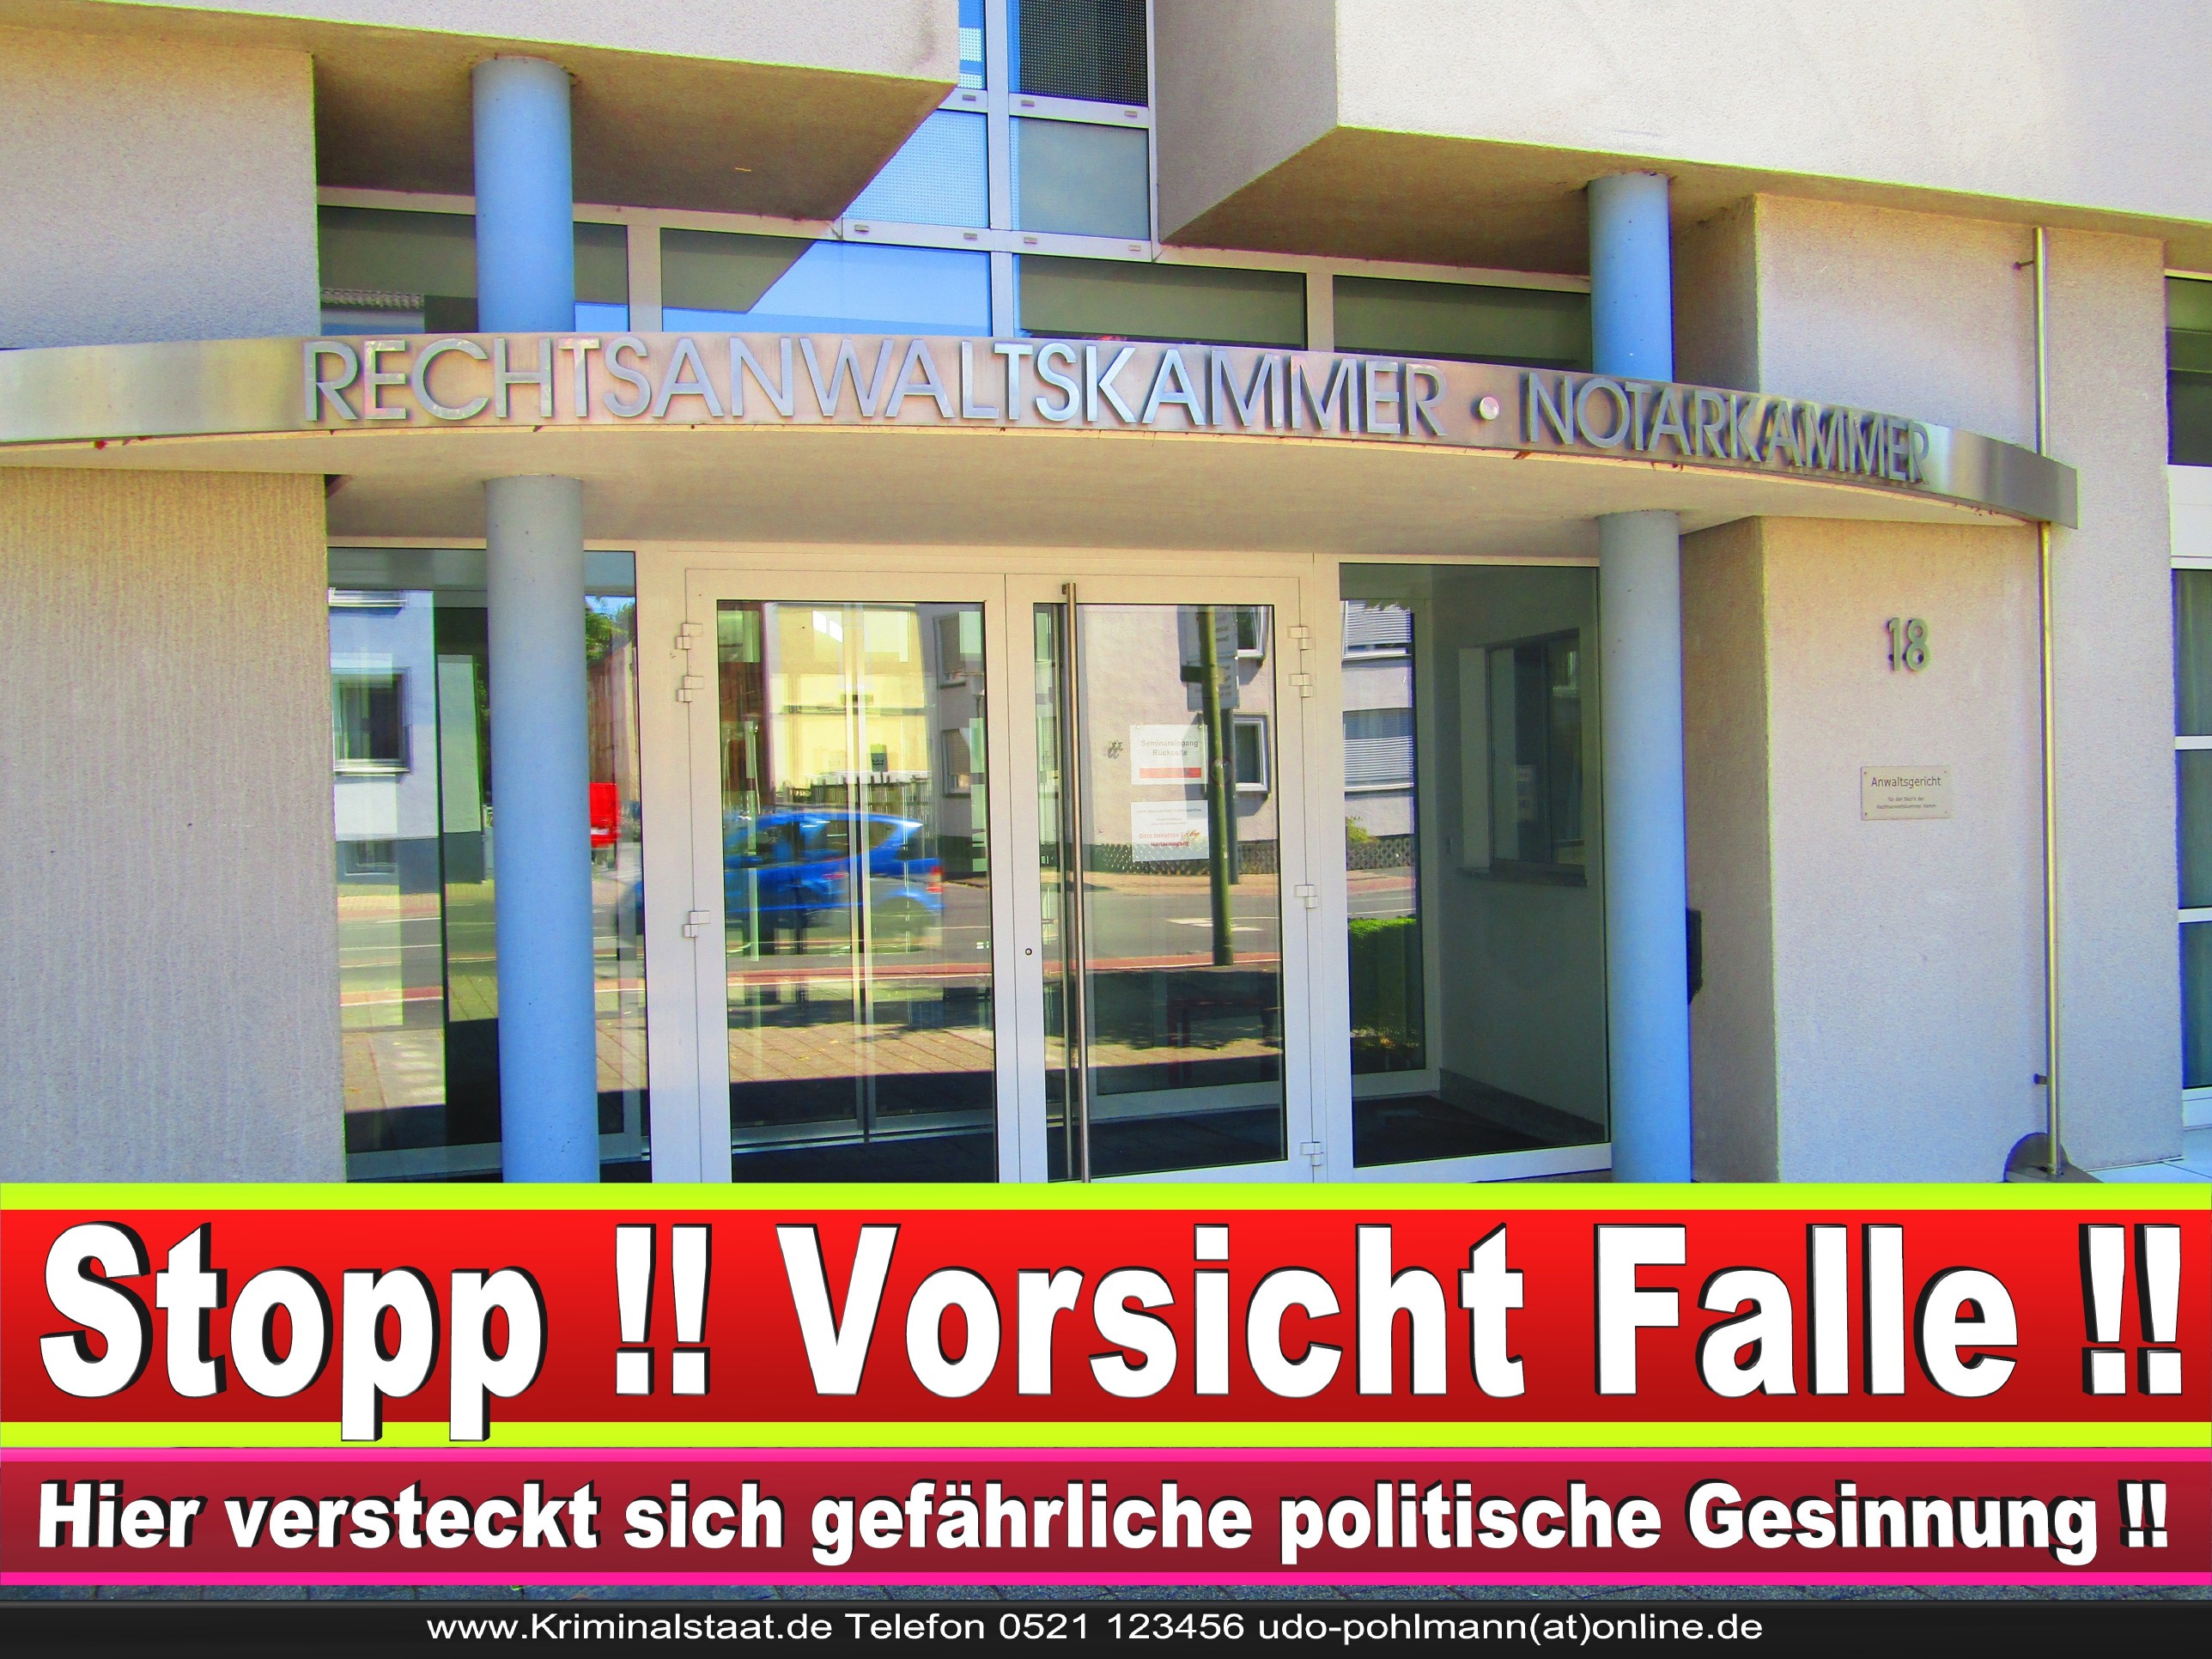 Rechtsanwaltskammer Hamm NRW Justizminister Rechtsanwalt Notar Vermögensverfall Urteil Rechtsprechung CDU SPD FDP Berufsordnung Rechtsanwälte Rechtsprechung (9)